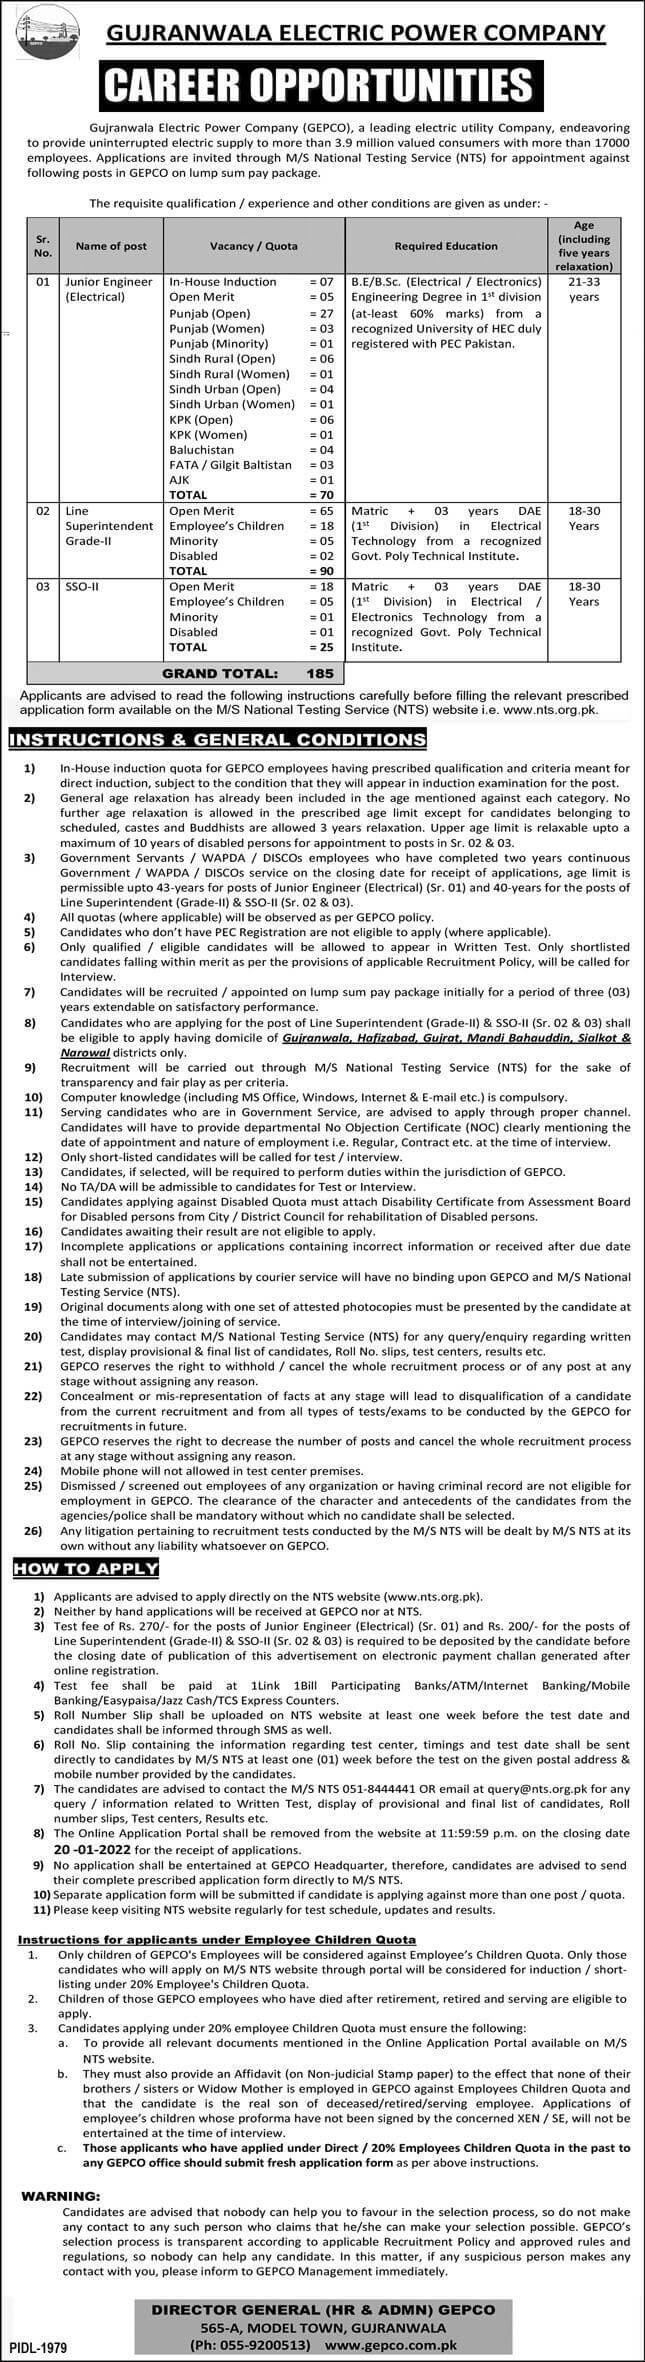 GEPCO Jobs in Gujranwala Jan 2022